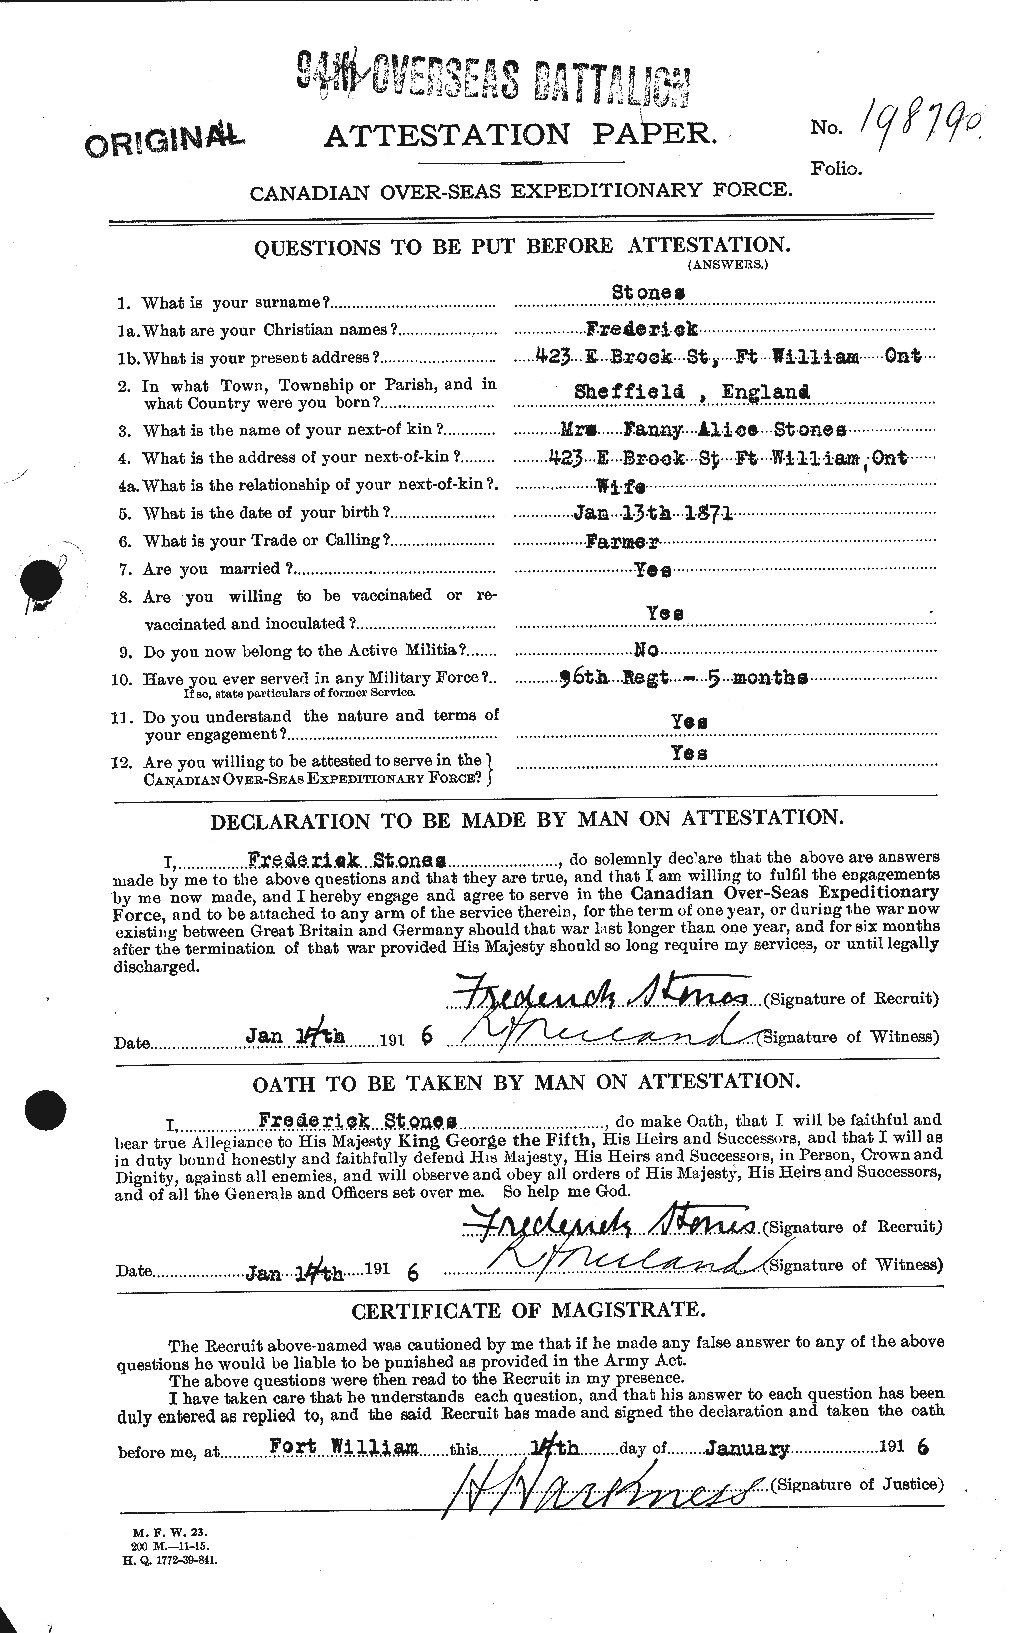 Dossiers du Personnel de la Première Guerre mondiale - CEC 121469a